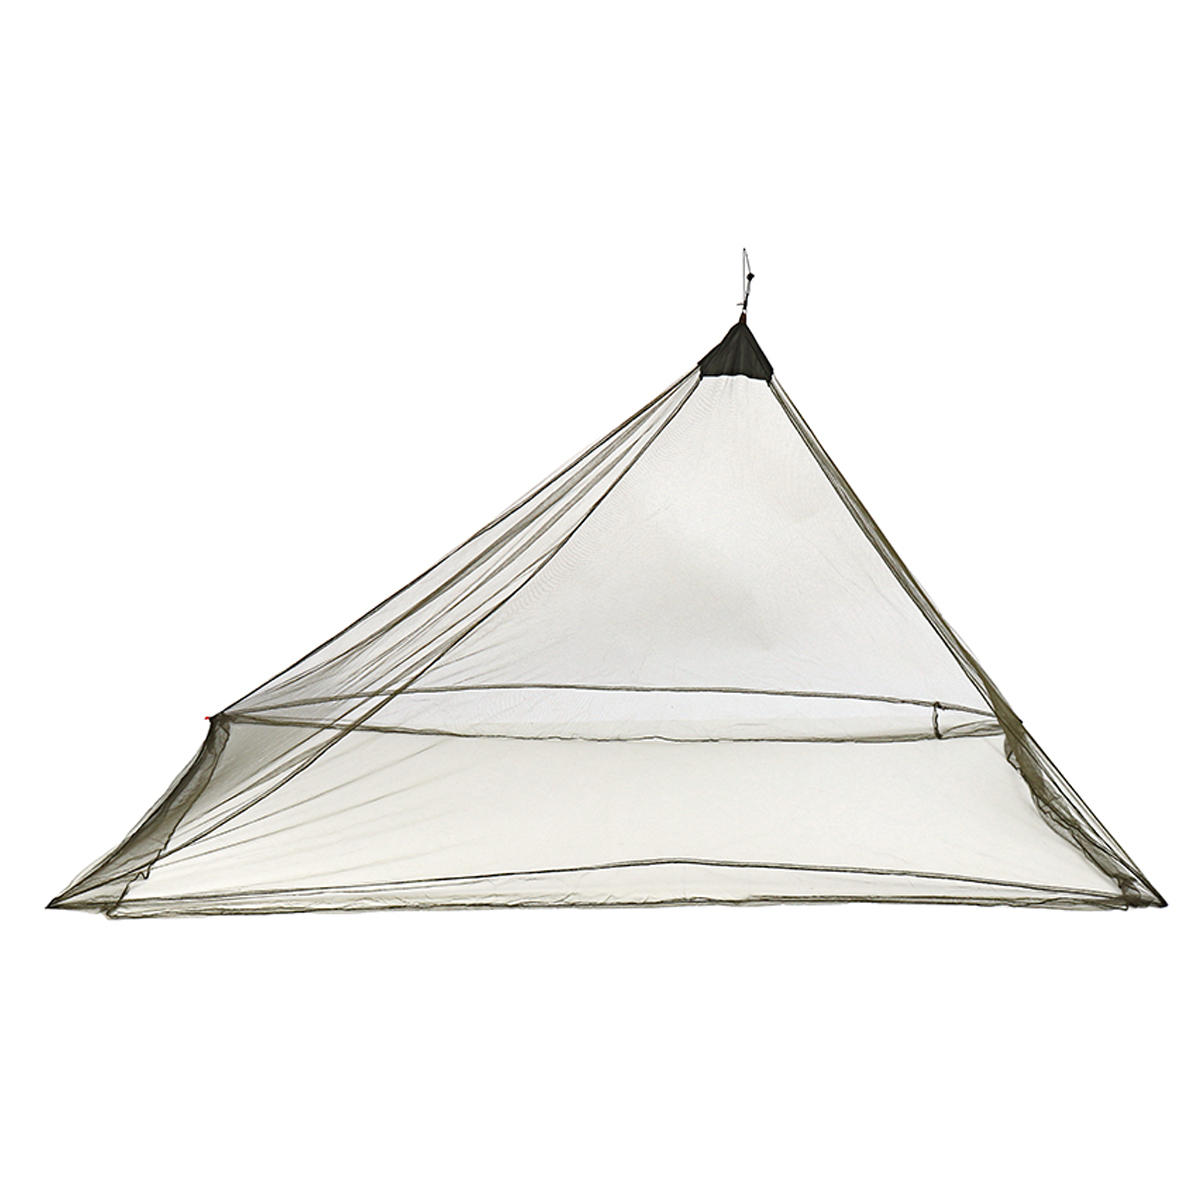 Moustiquaire de camping légère et portable, tente anti-moustiques extérieure, auvent anti-moustiques.